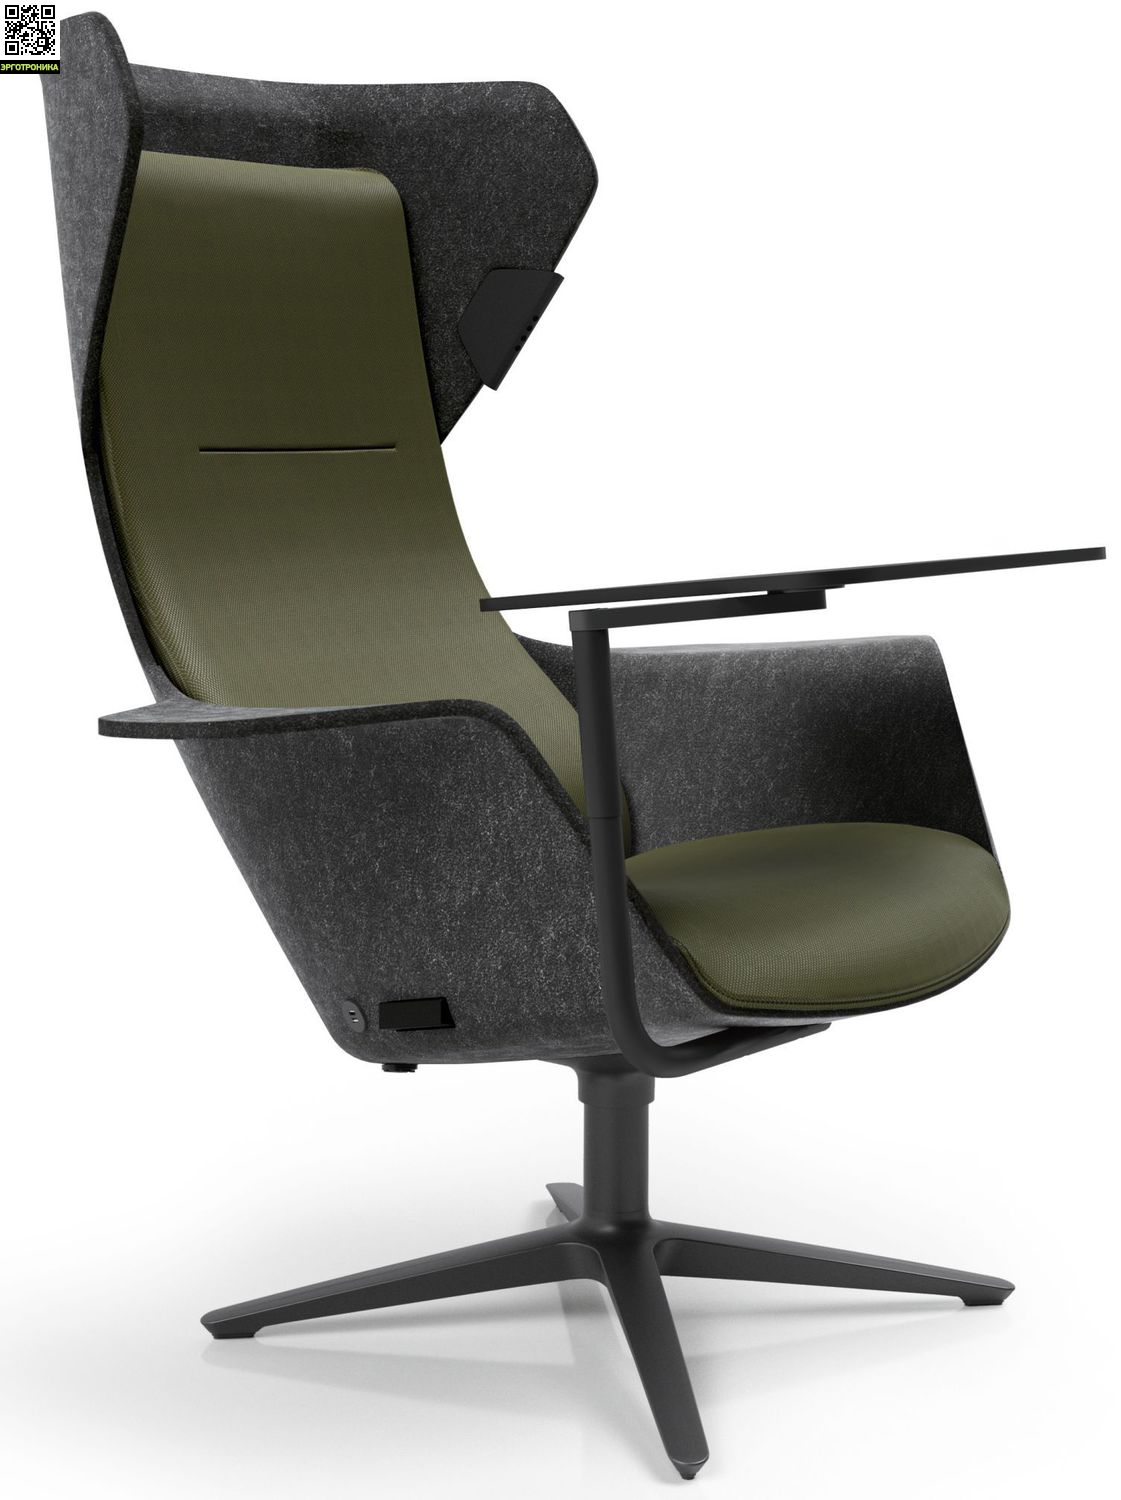 Кресло премиум-класса Klober Work (Ткань Nova) купить за 304252 рублей. Отзывы, фото доставка по Москве и России в Эрготронике